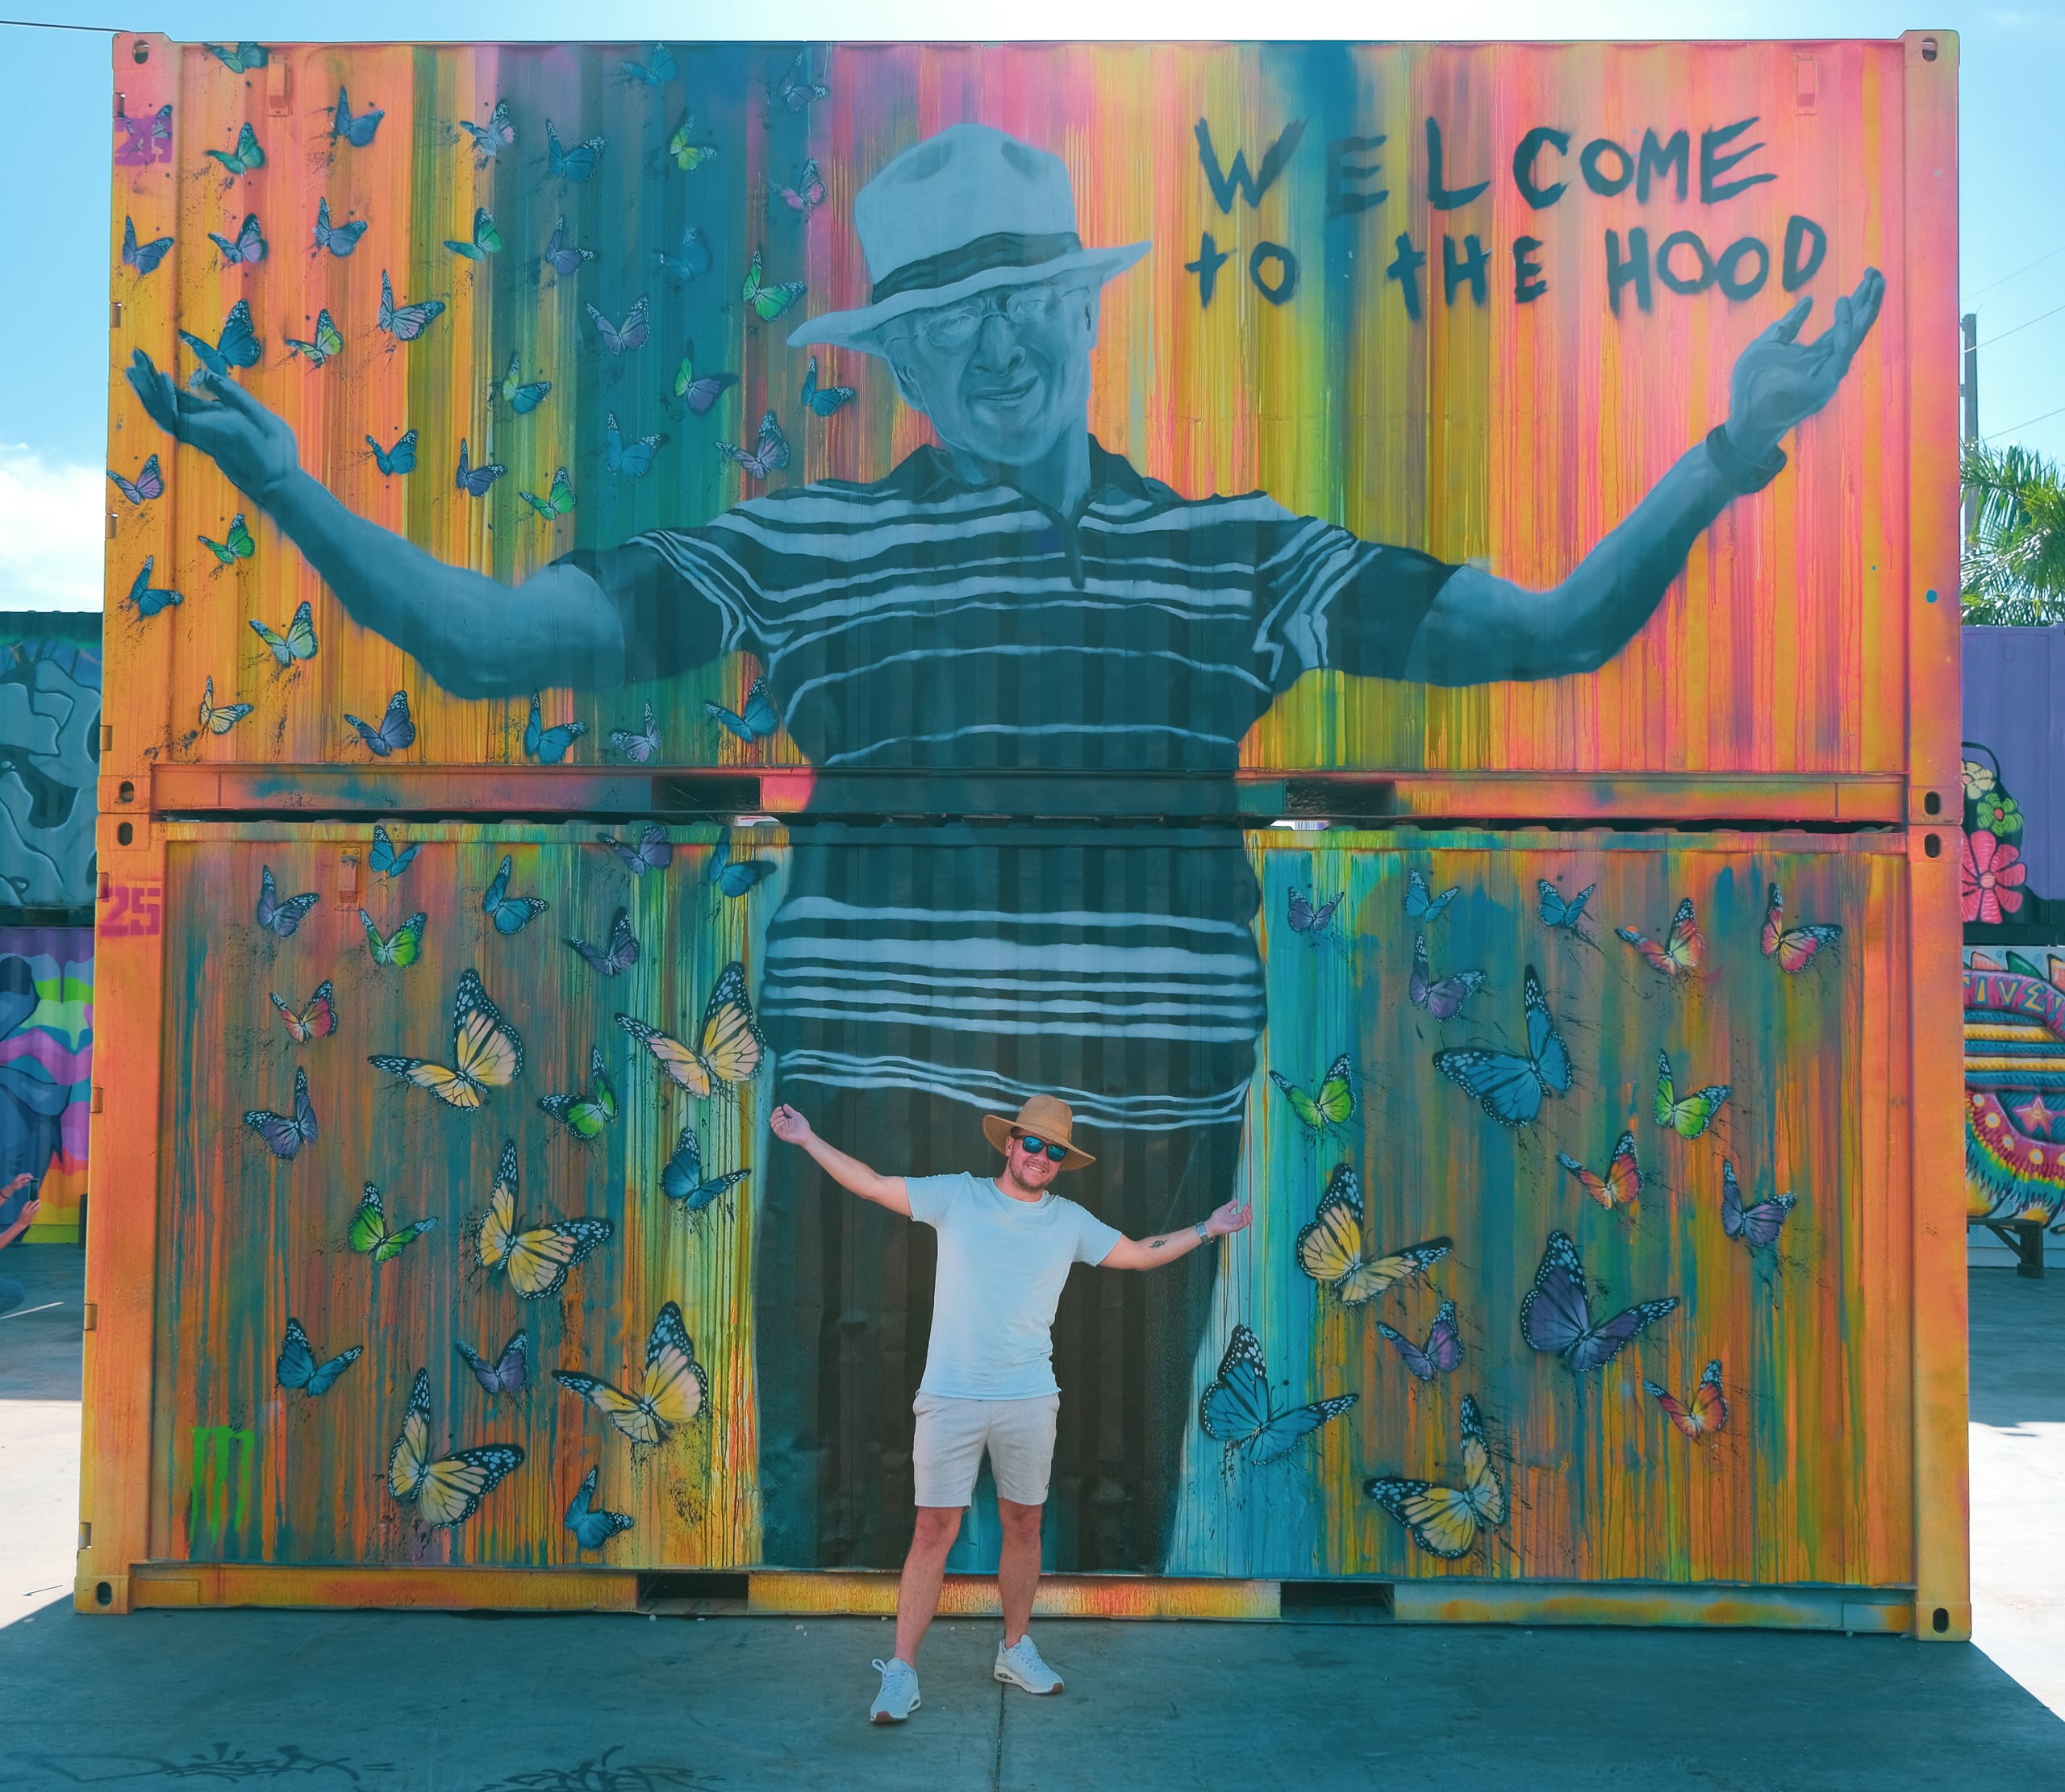 Chris bij het kunstwerk 'Welcome to the hood' in Wynwood, Miami.